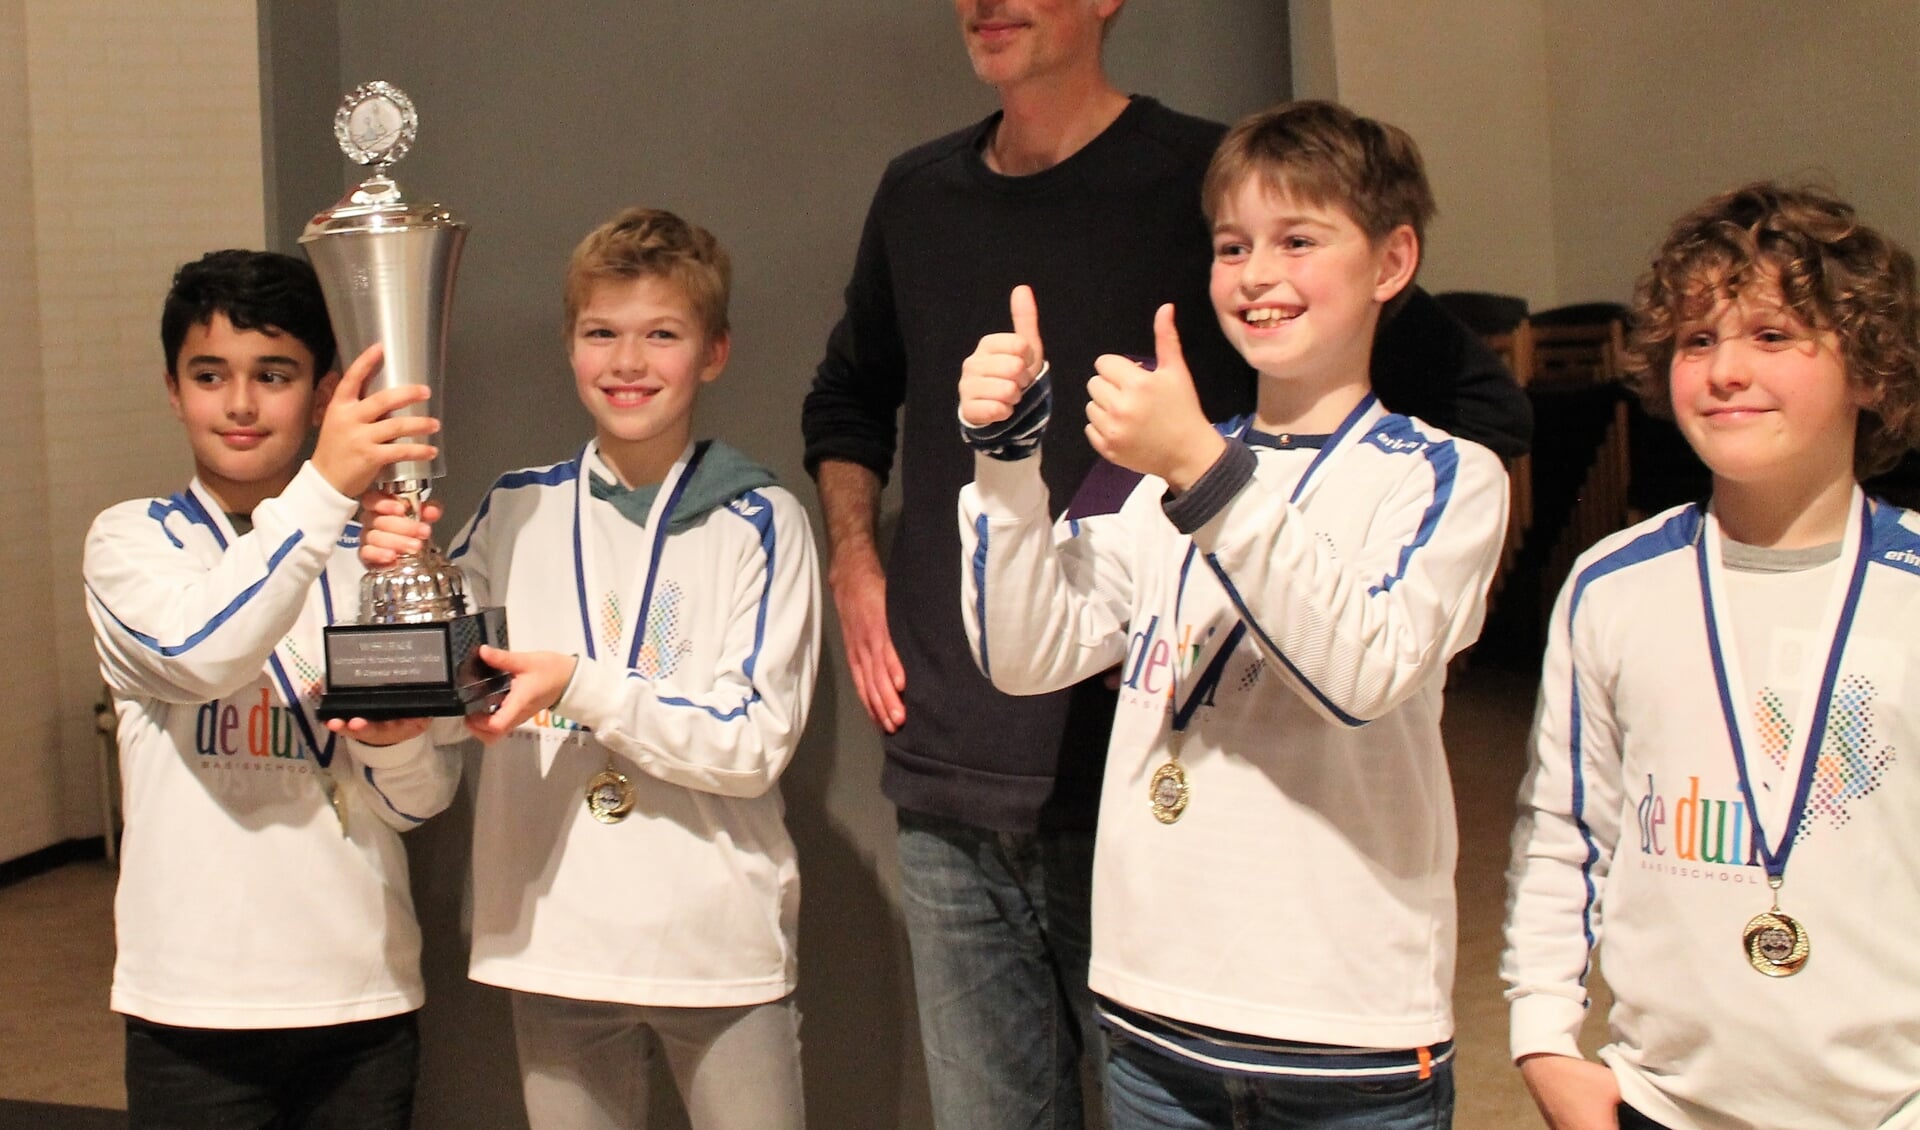 Schaakteam De Duif 1 (v.l.n.r. Darien, Quinten, Jasper en Sil) onder leiding van ‘schaakvader’ Asaf Lahat won de wisselbeker op het Schoolschaaktoernooi van SV Oppositie.